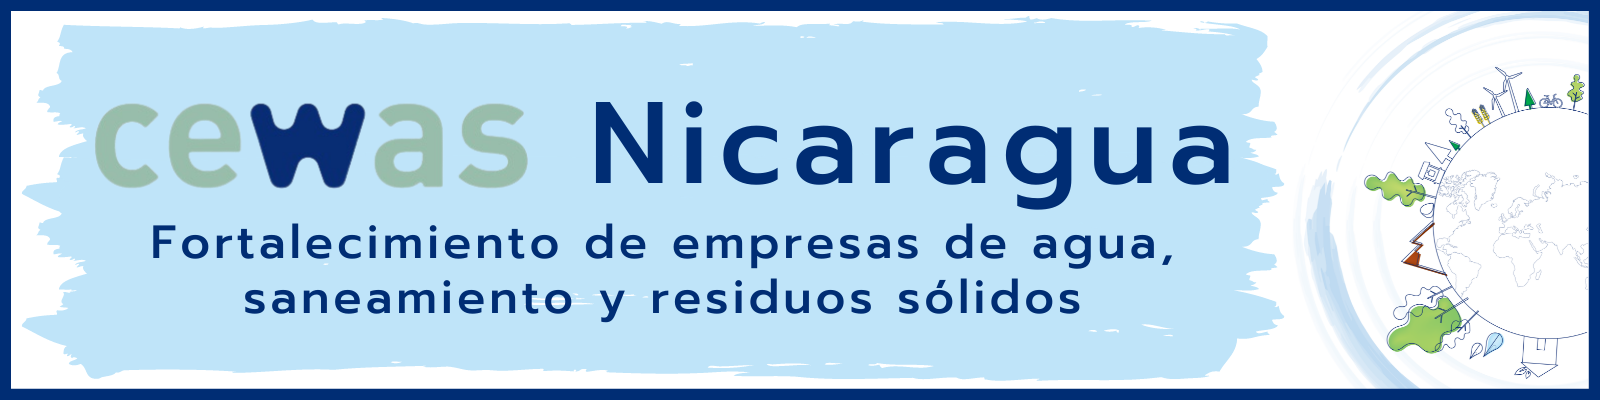 cewas Nicaragua